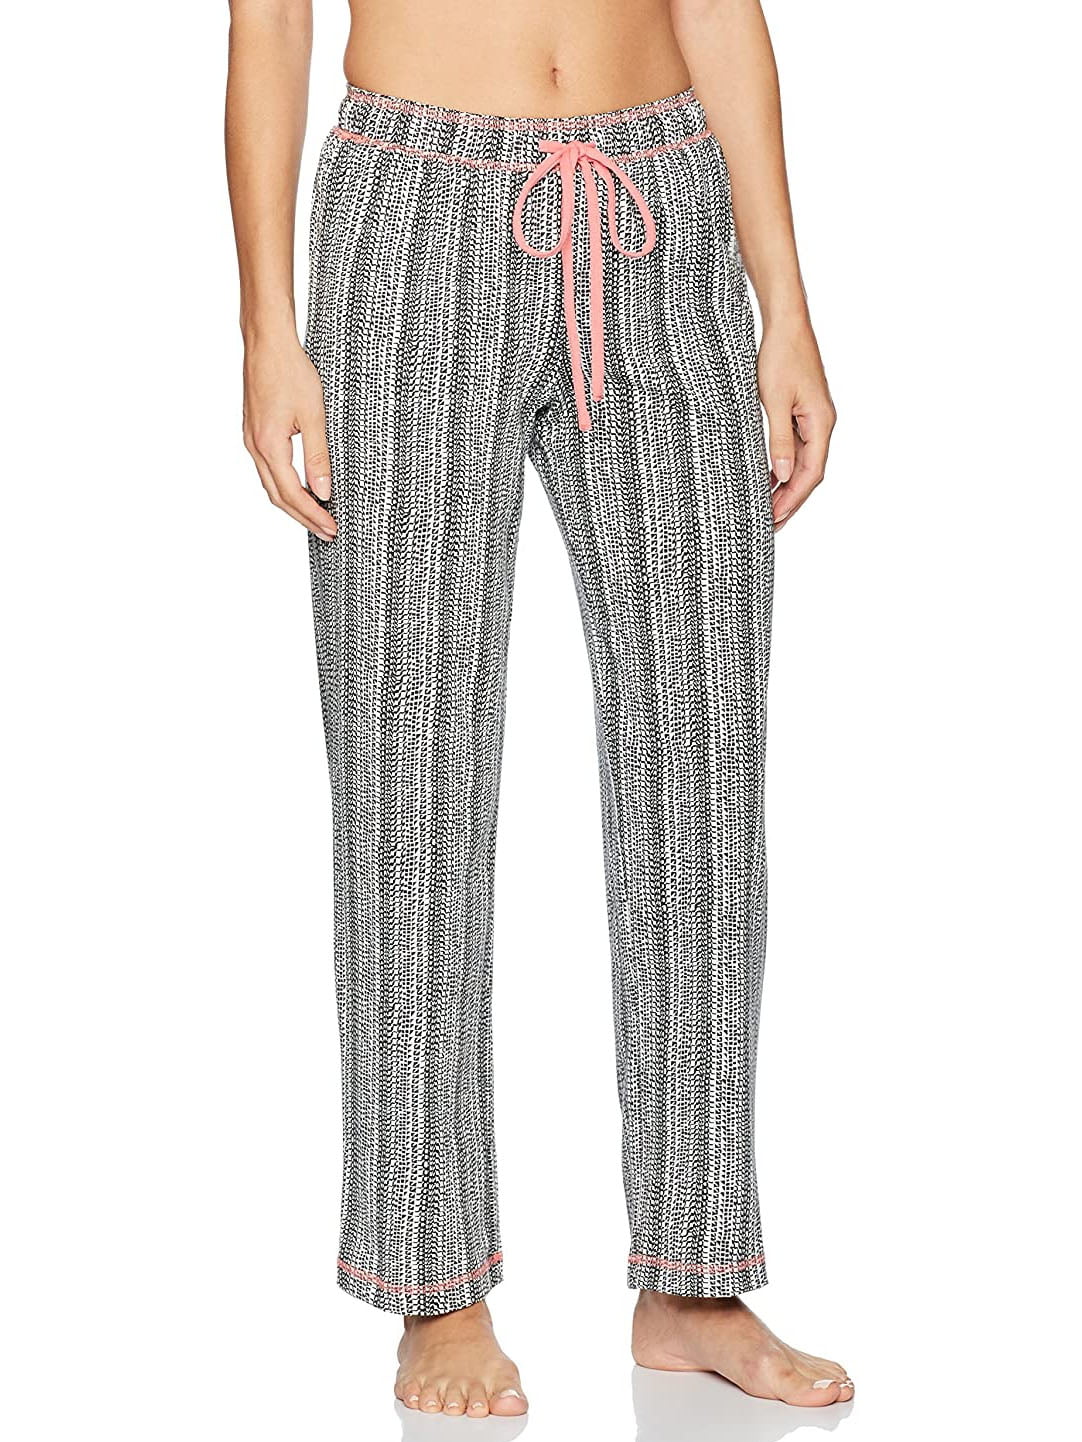 Karen Neuburger Womens Pajama Lounge Bottom Long Pant